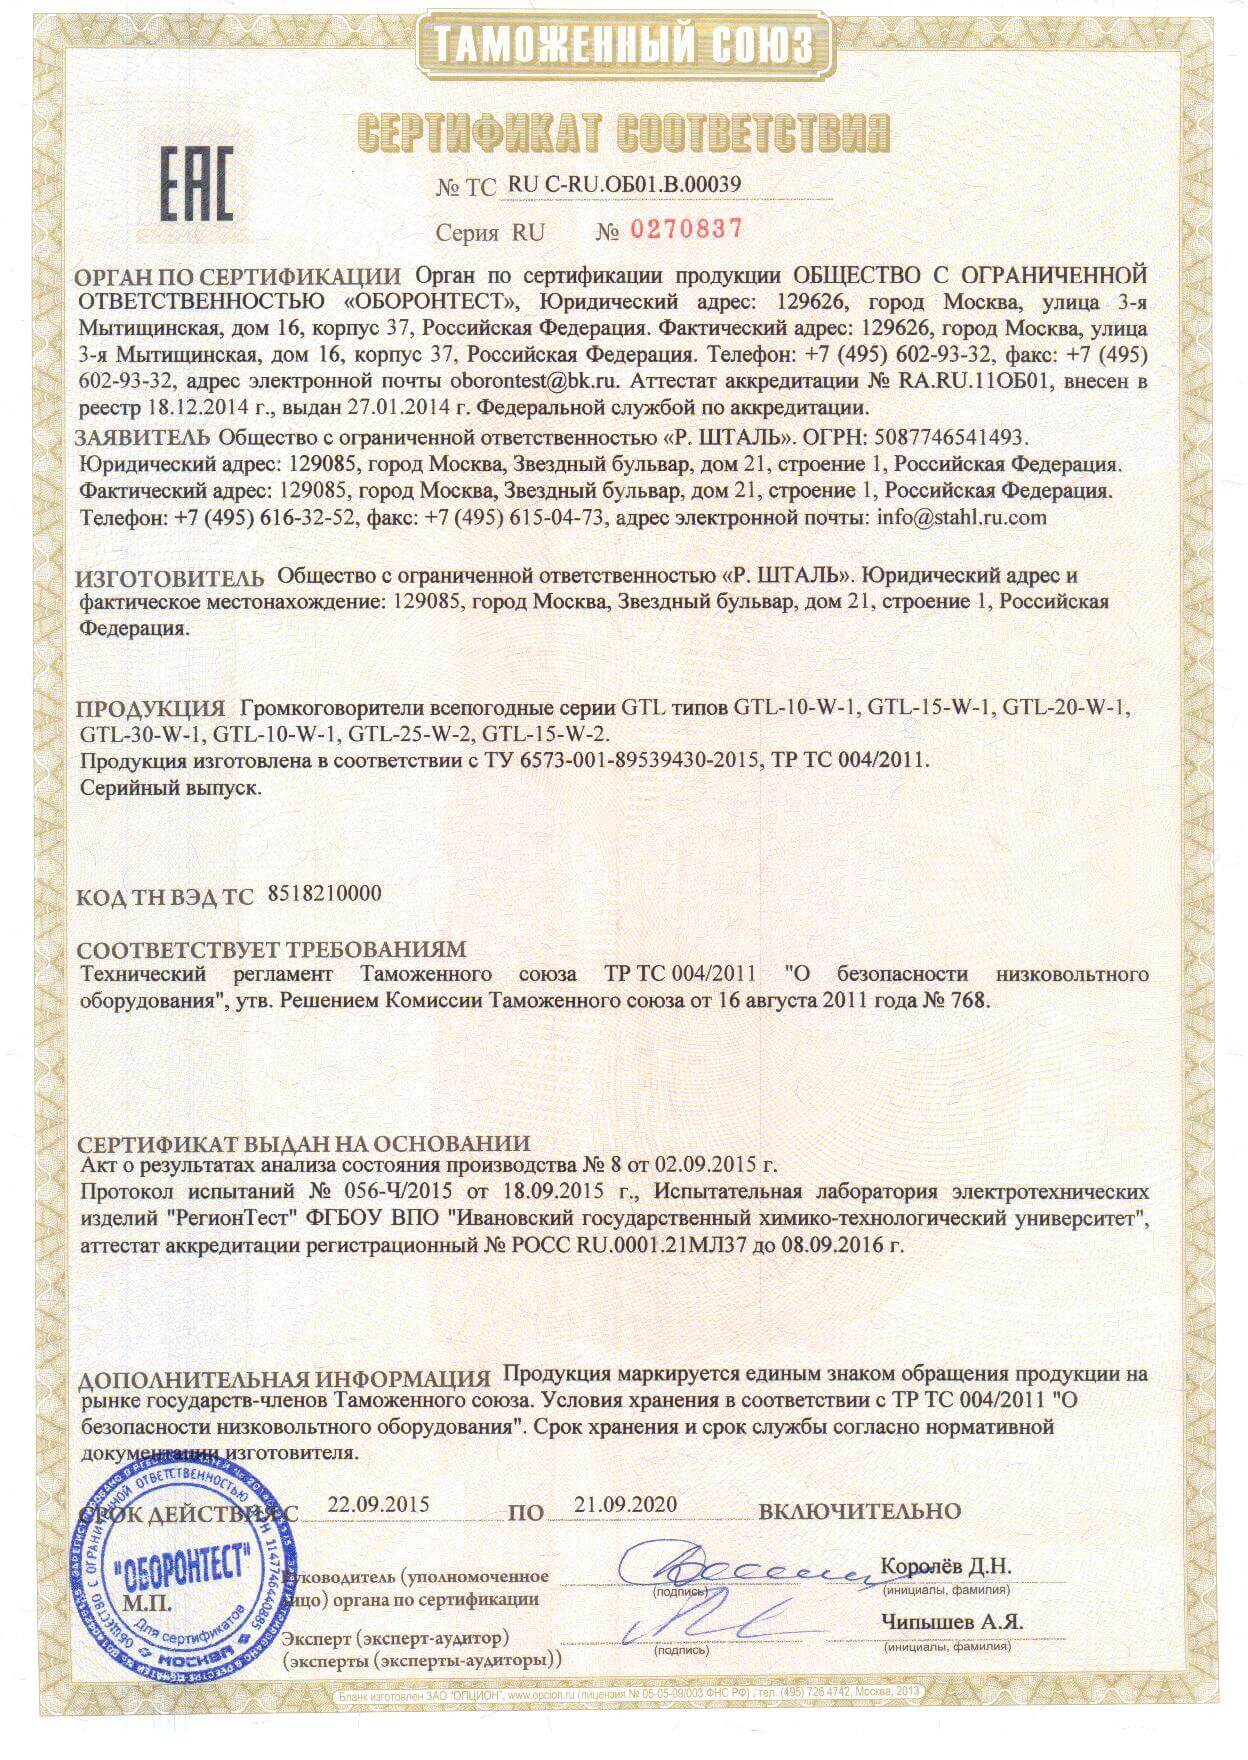 Сертификат безопасности низковольтного оборудования ТР ТС 004 – образец